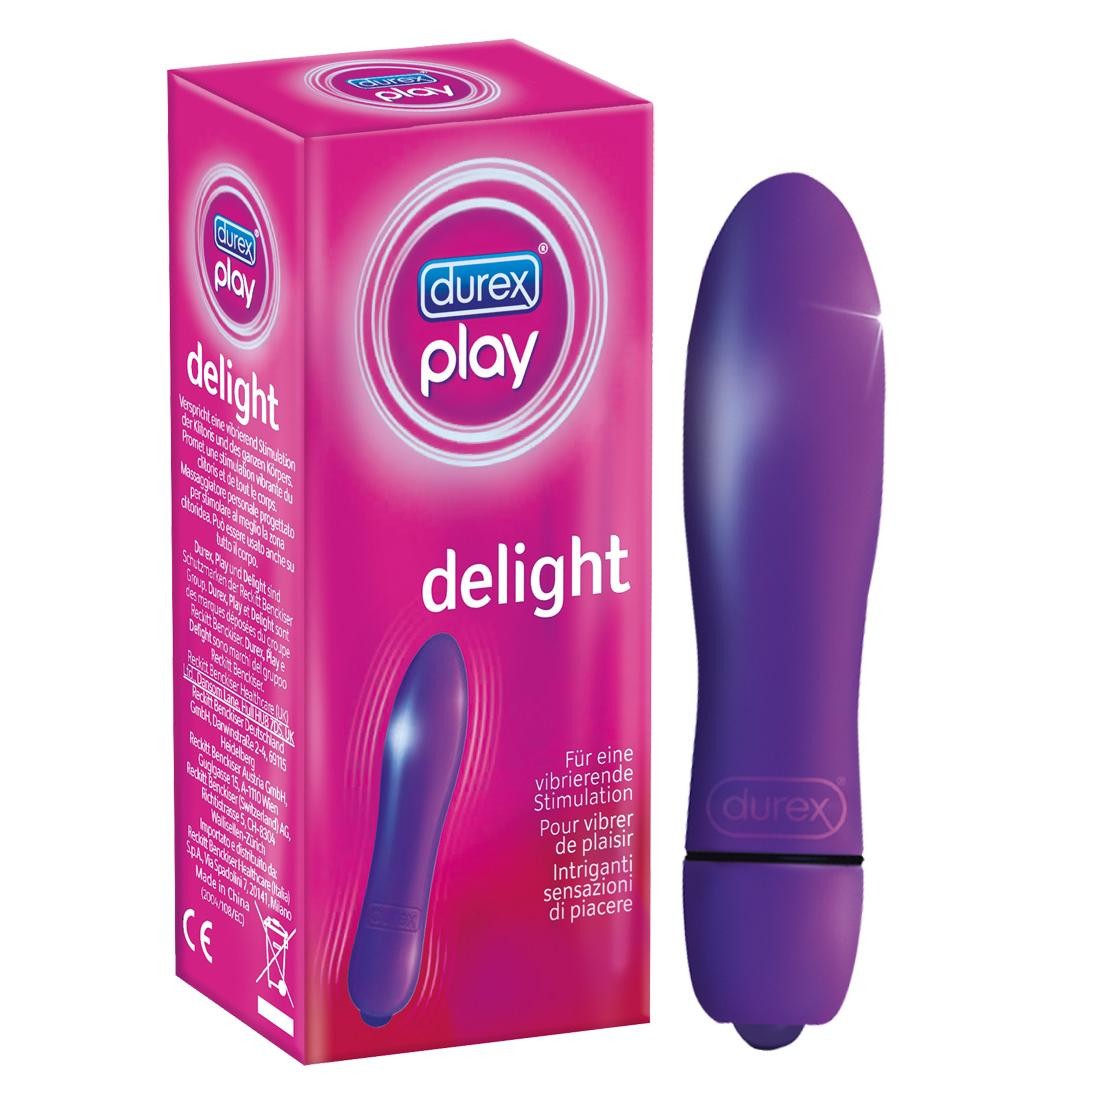  Durex  -  Durex  Play  Delight  -  Vibrator 